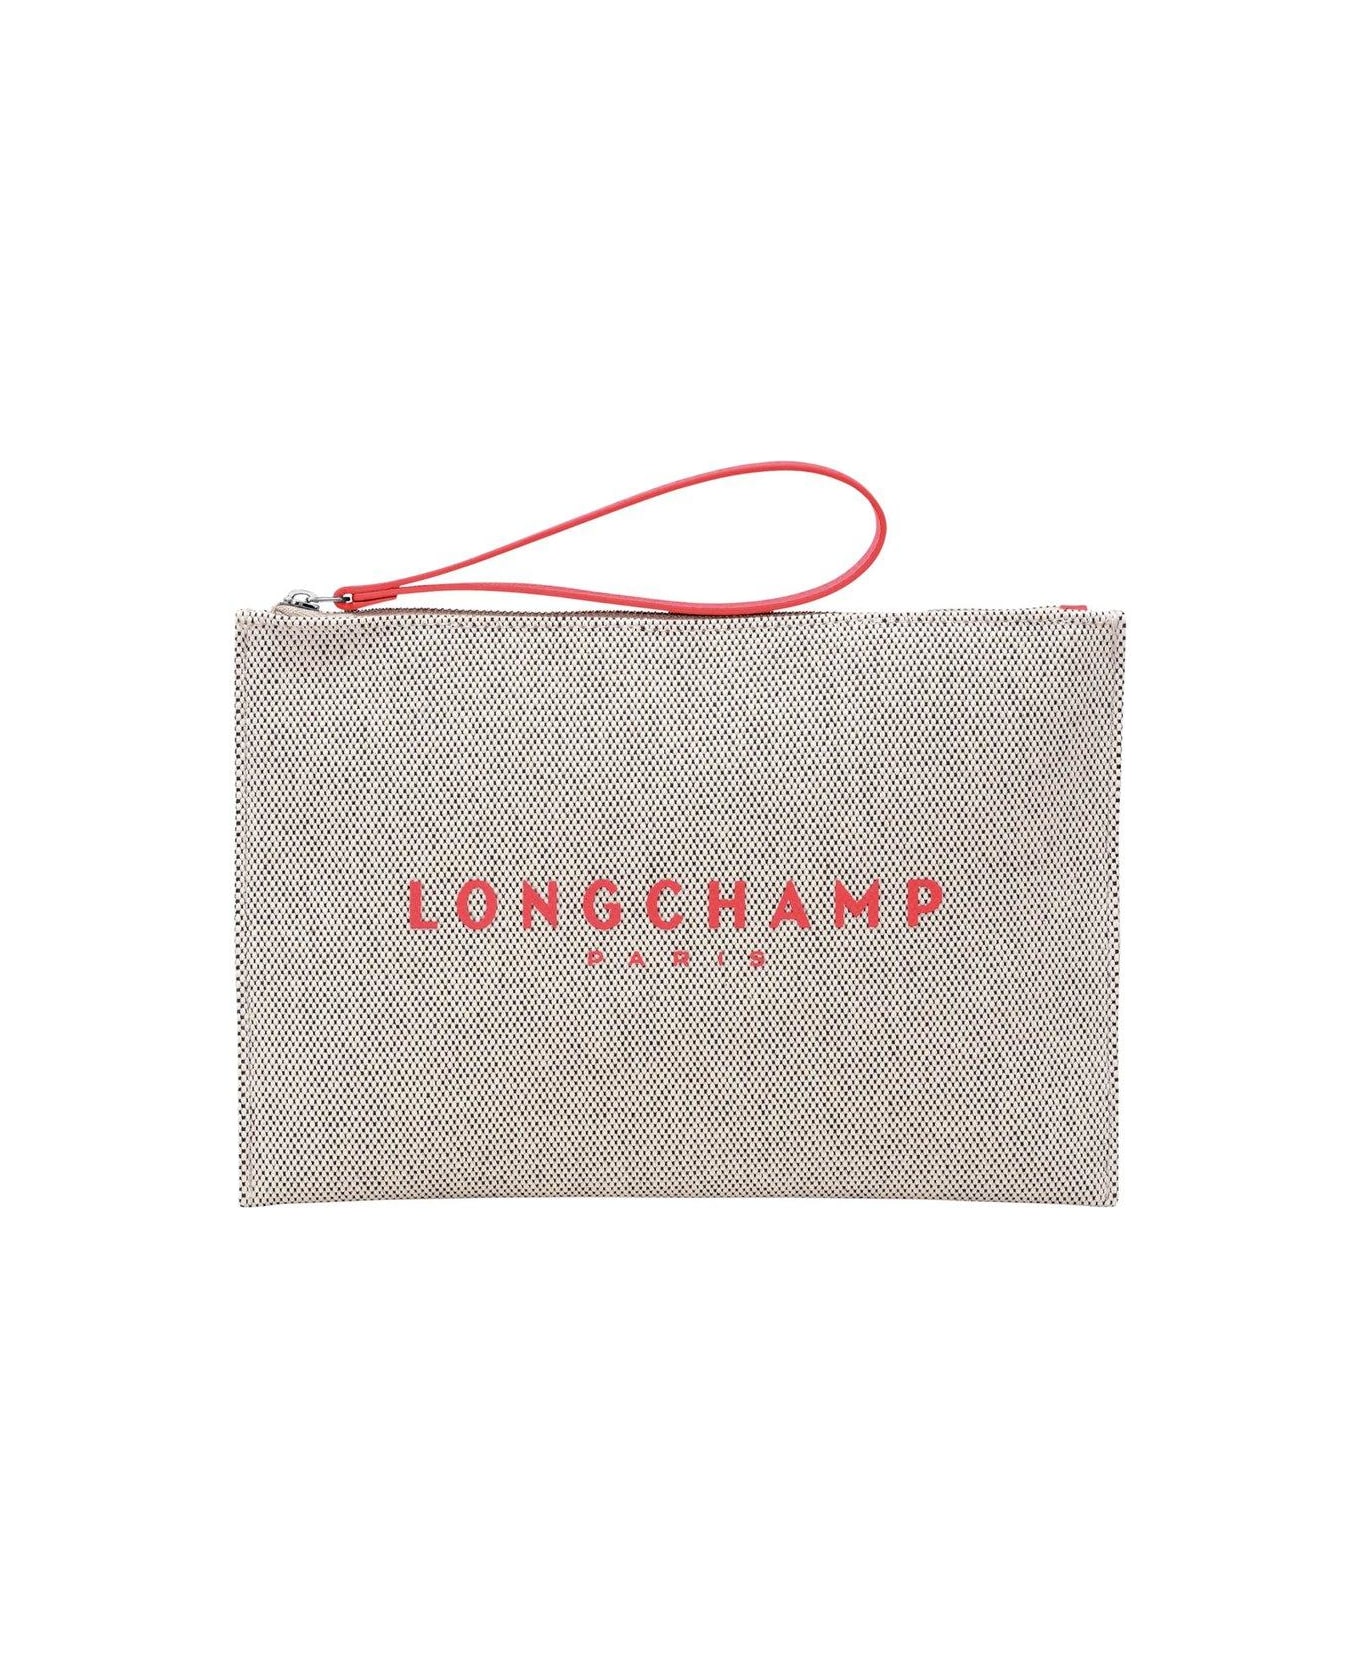 Longchamp Logo Print Zipped Clutch Bag - Coral